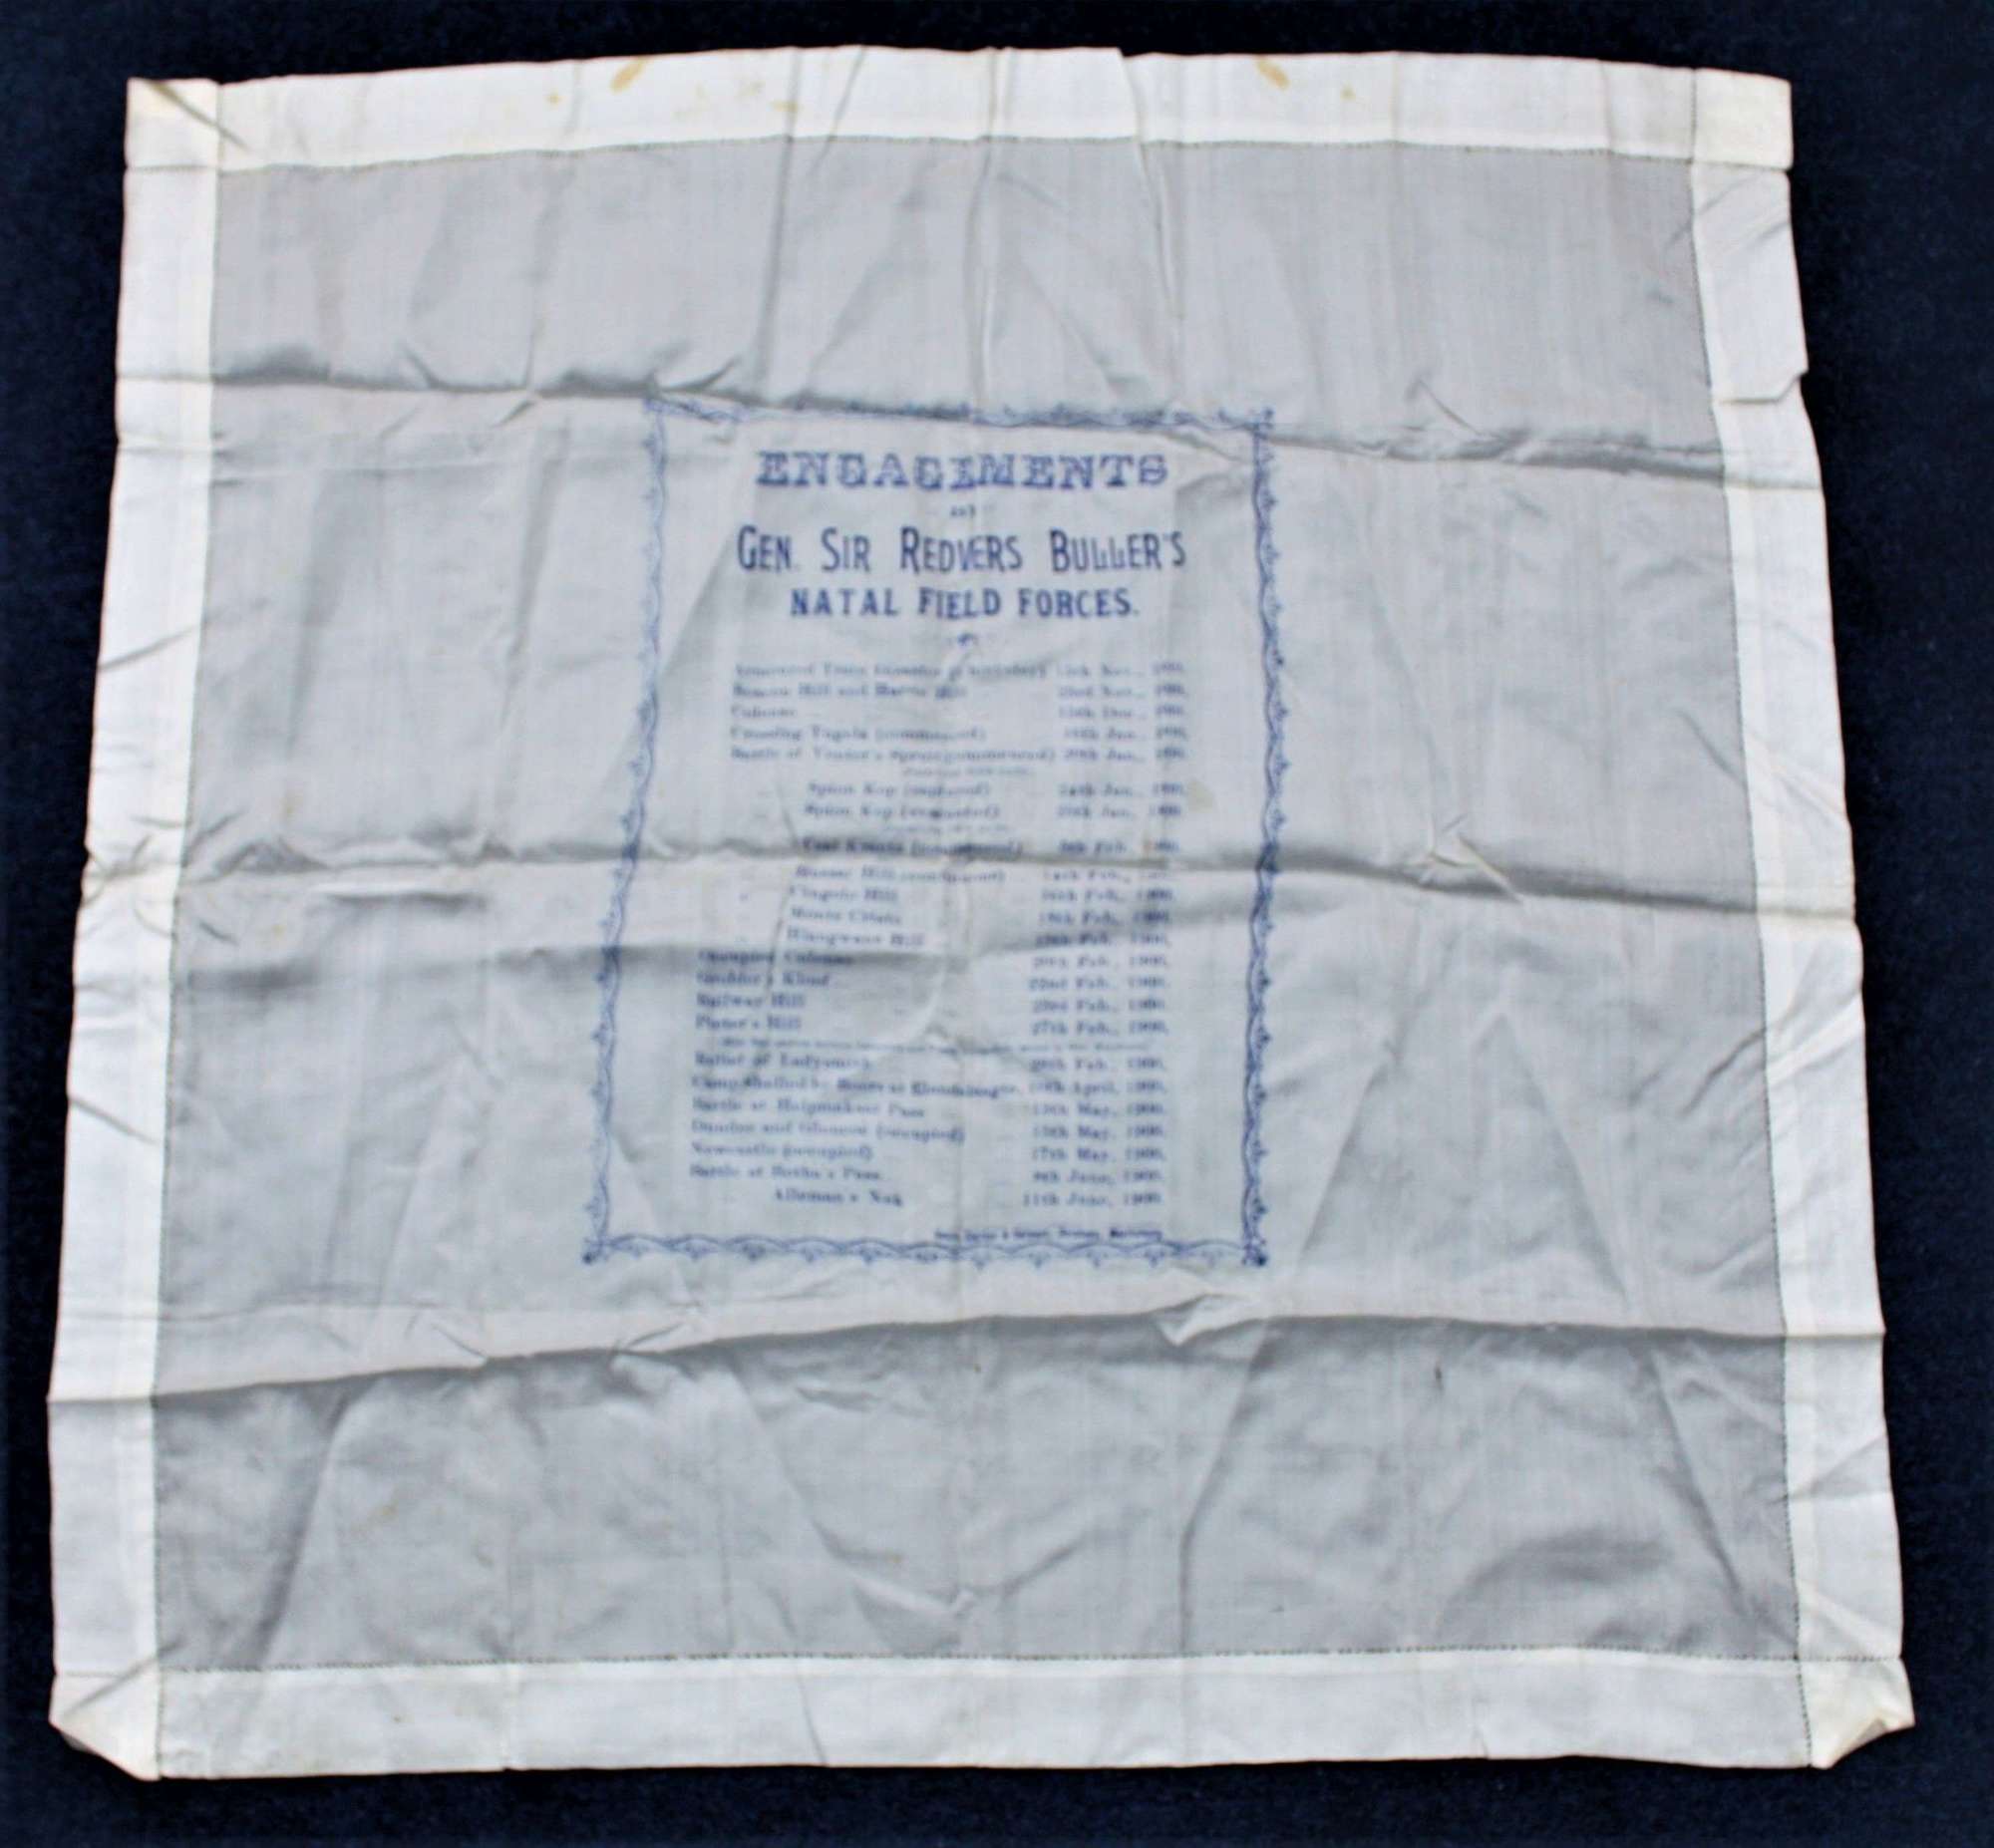 Boer War Souvenir Silk Handkerchief of General Buller's Achievements